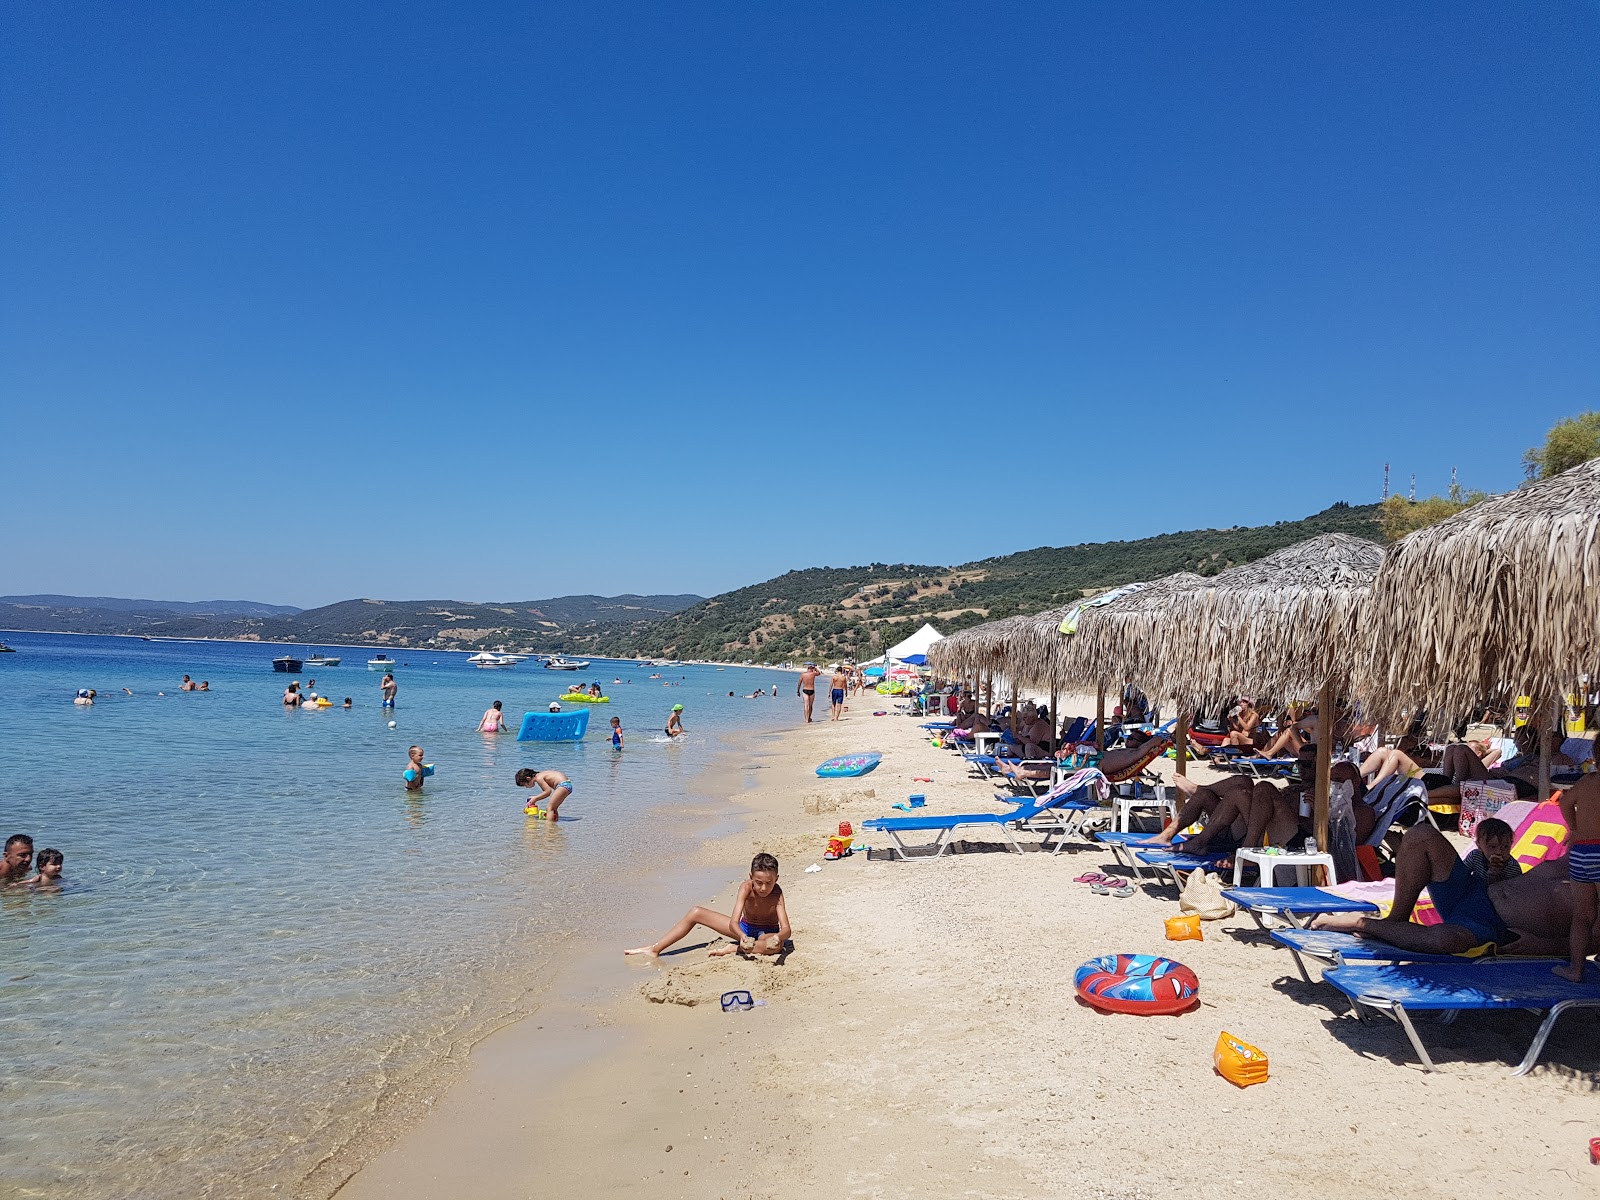 Fotografie cu Xiropotamos beach cu plajă spațioasă